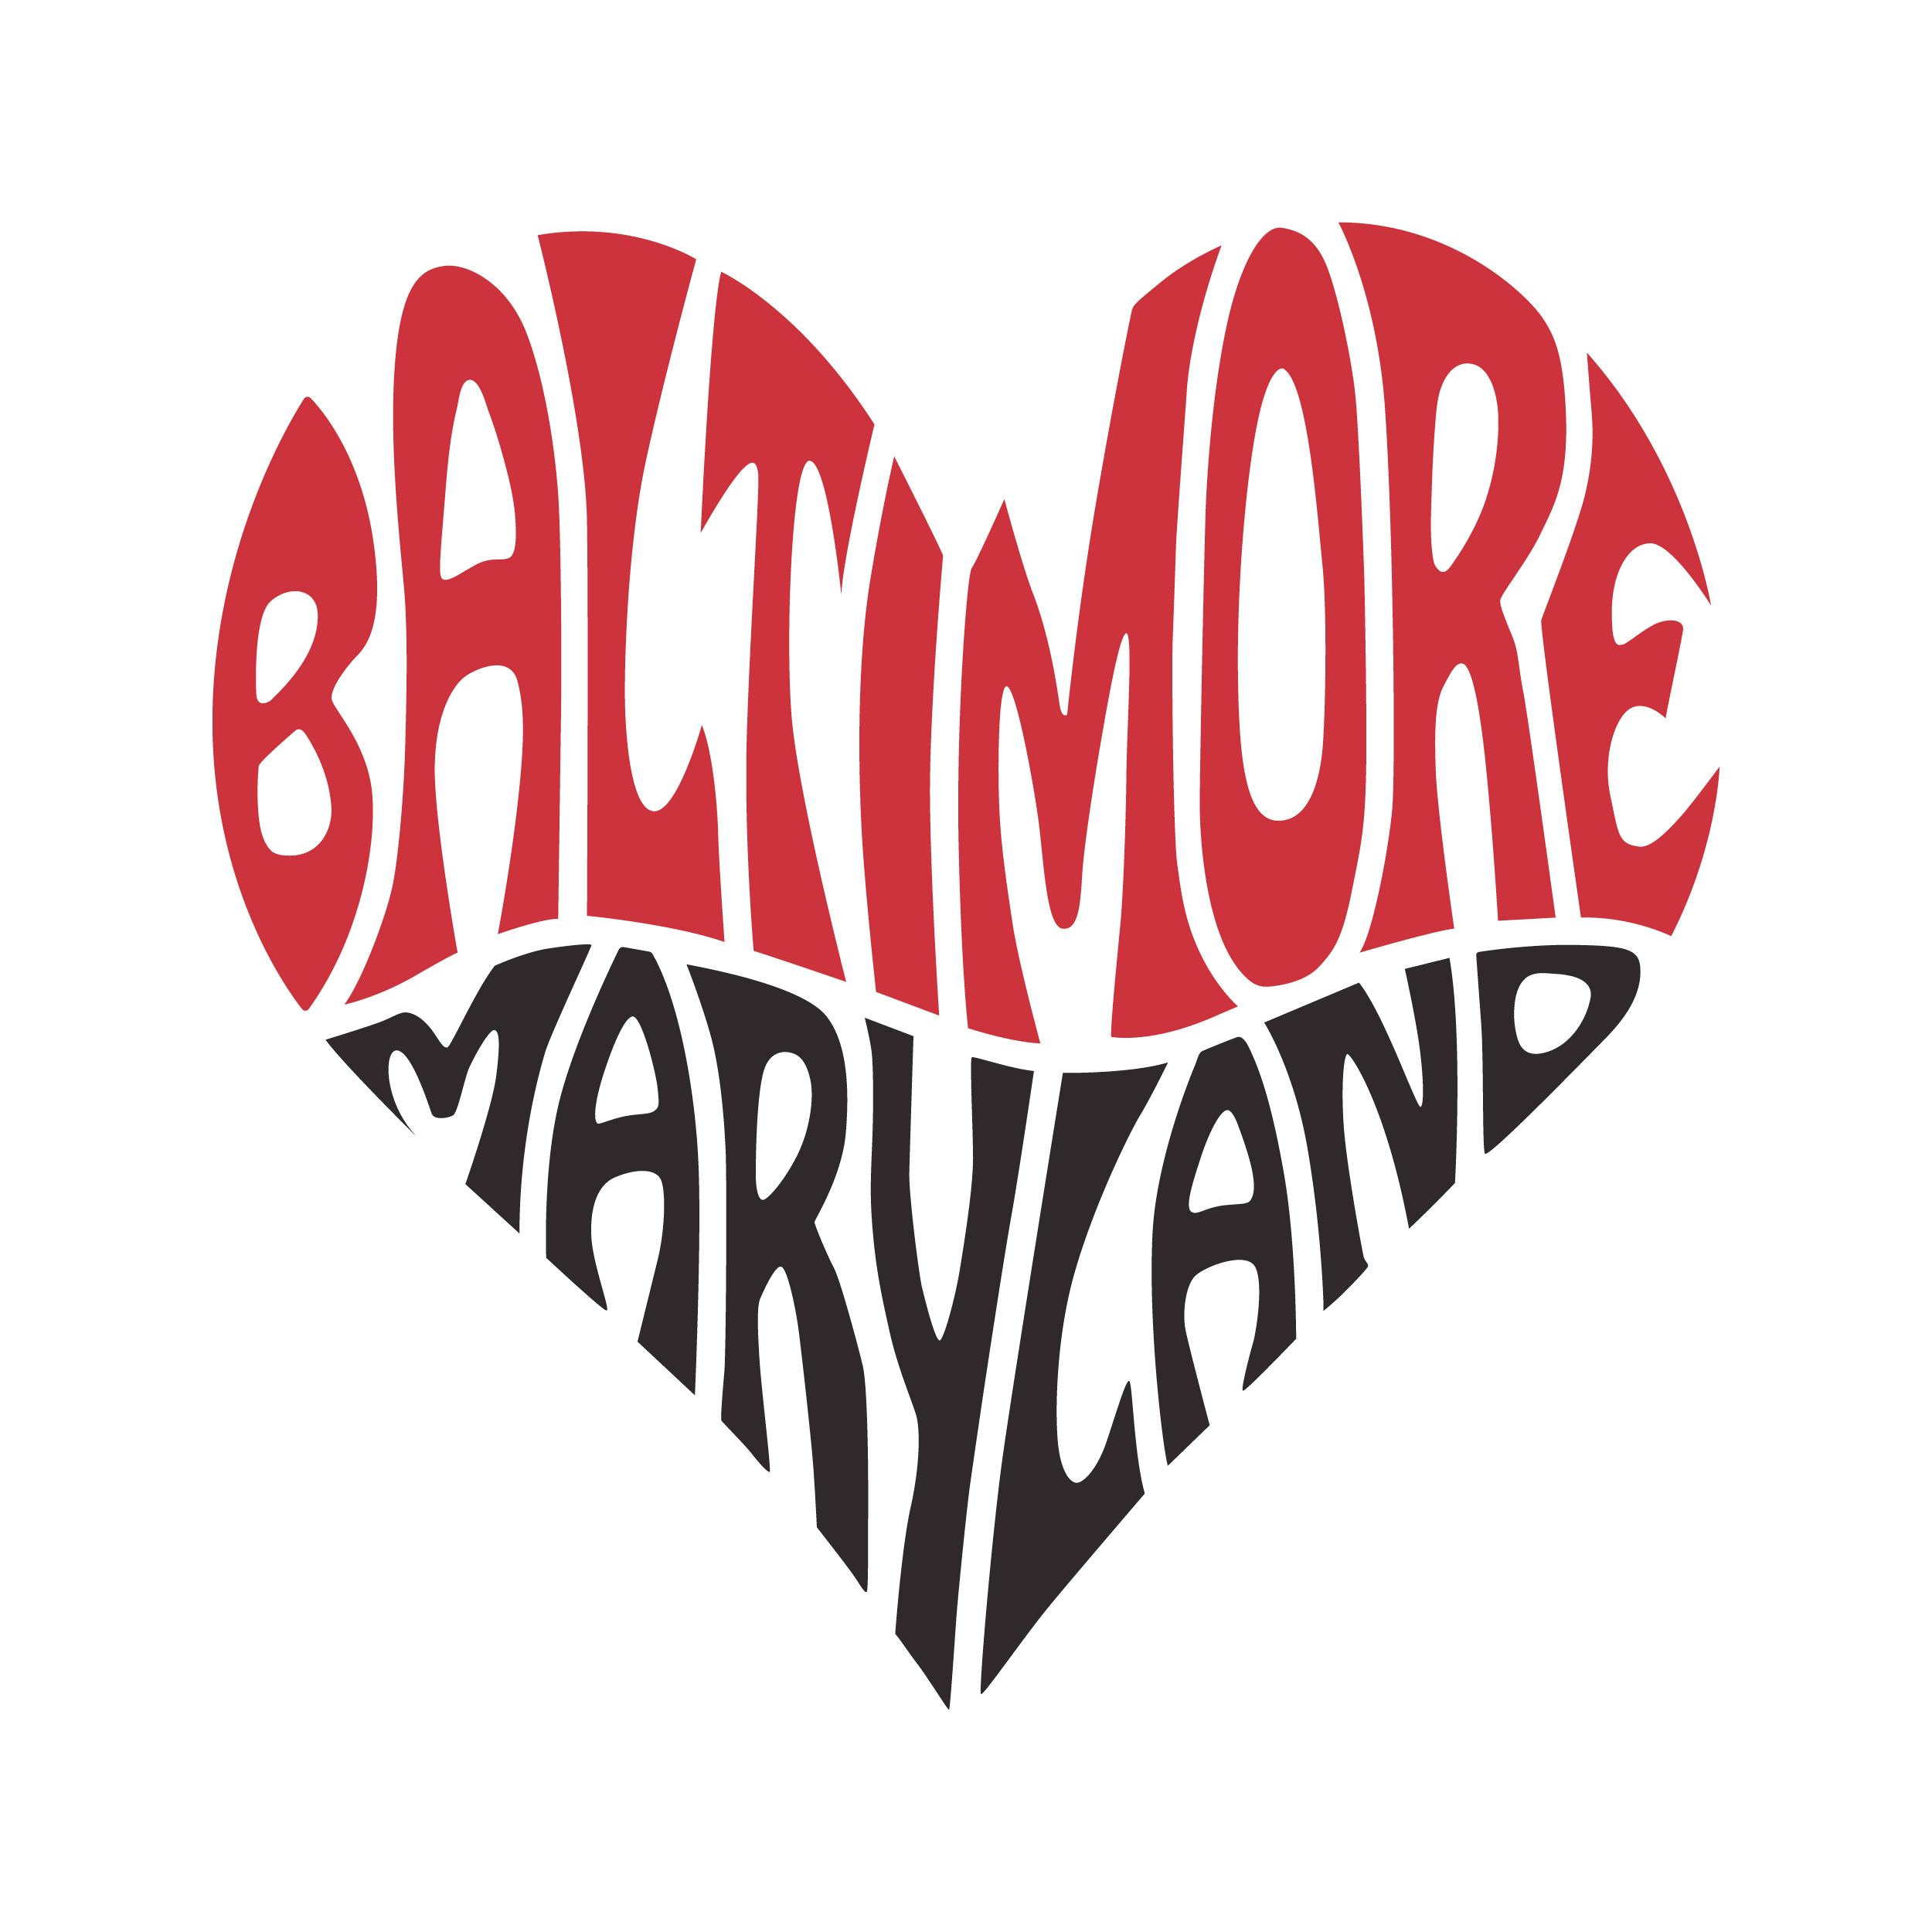 Baltimore Maryland Heart SVG Cuttable Design